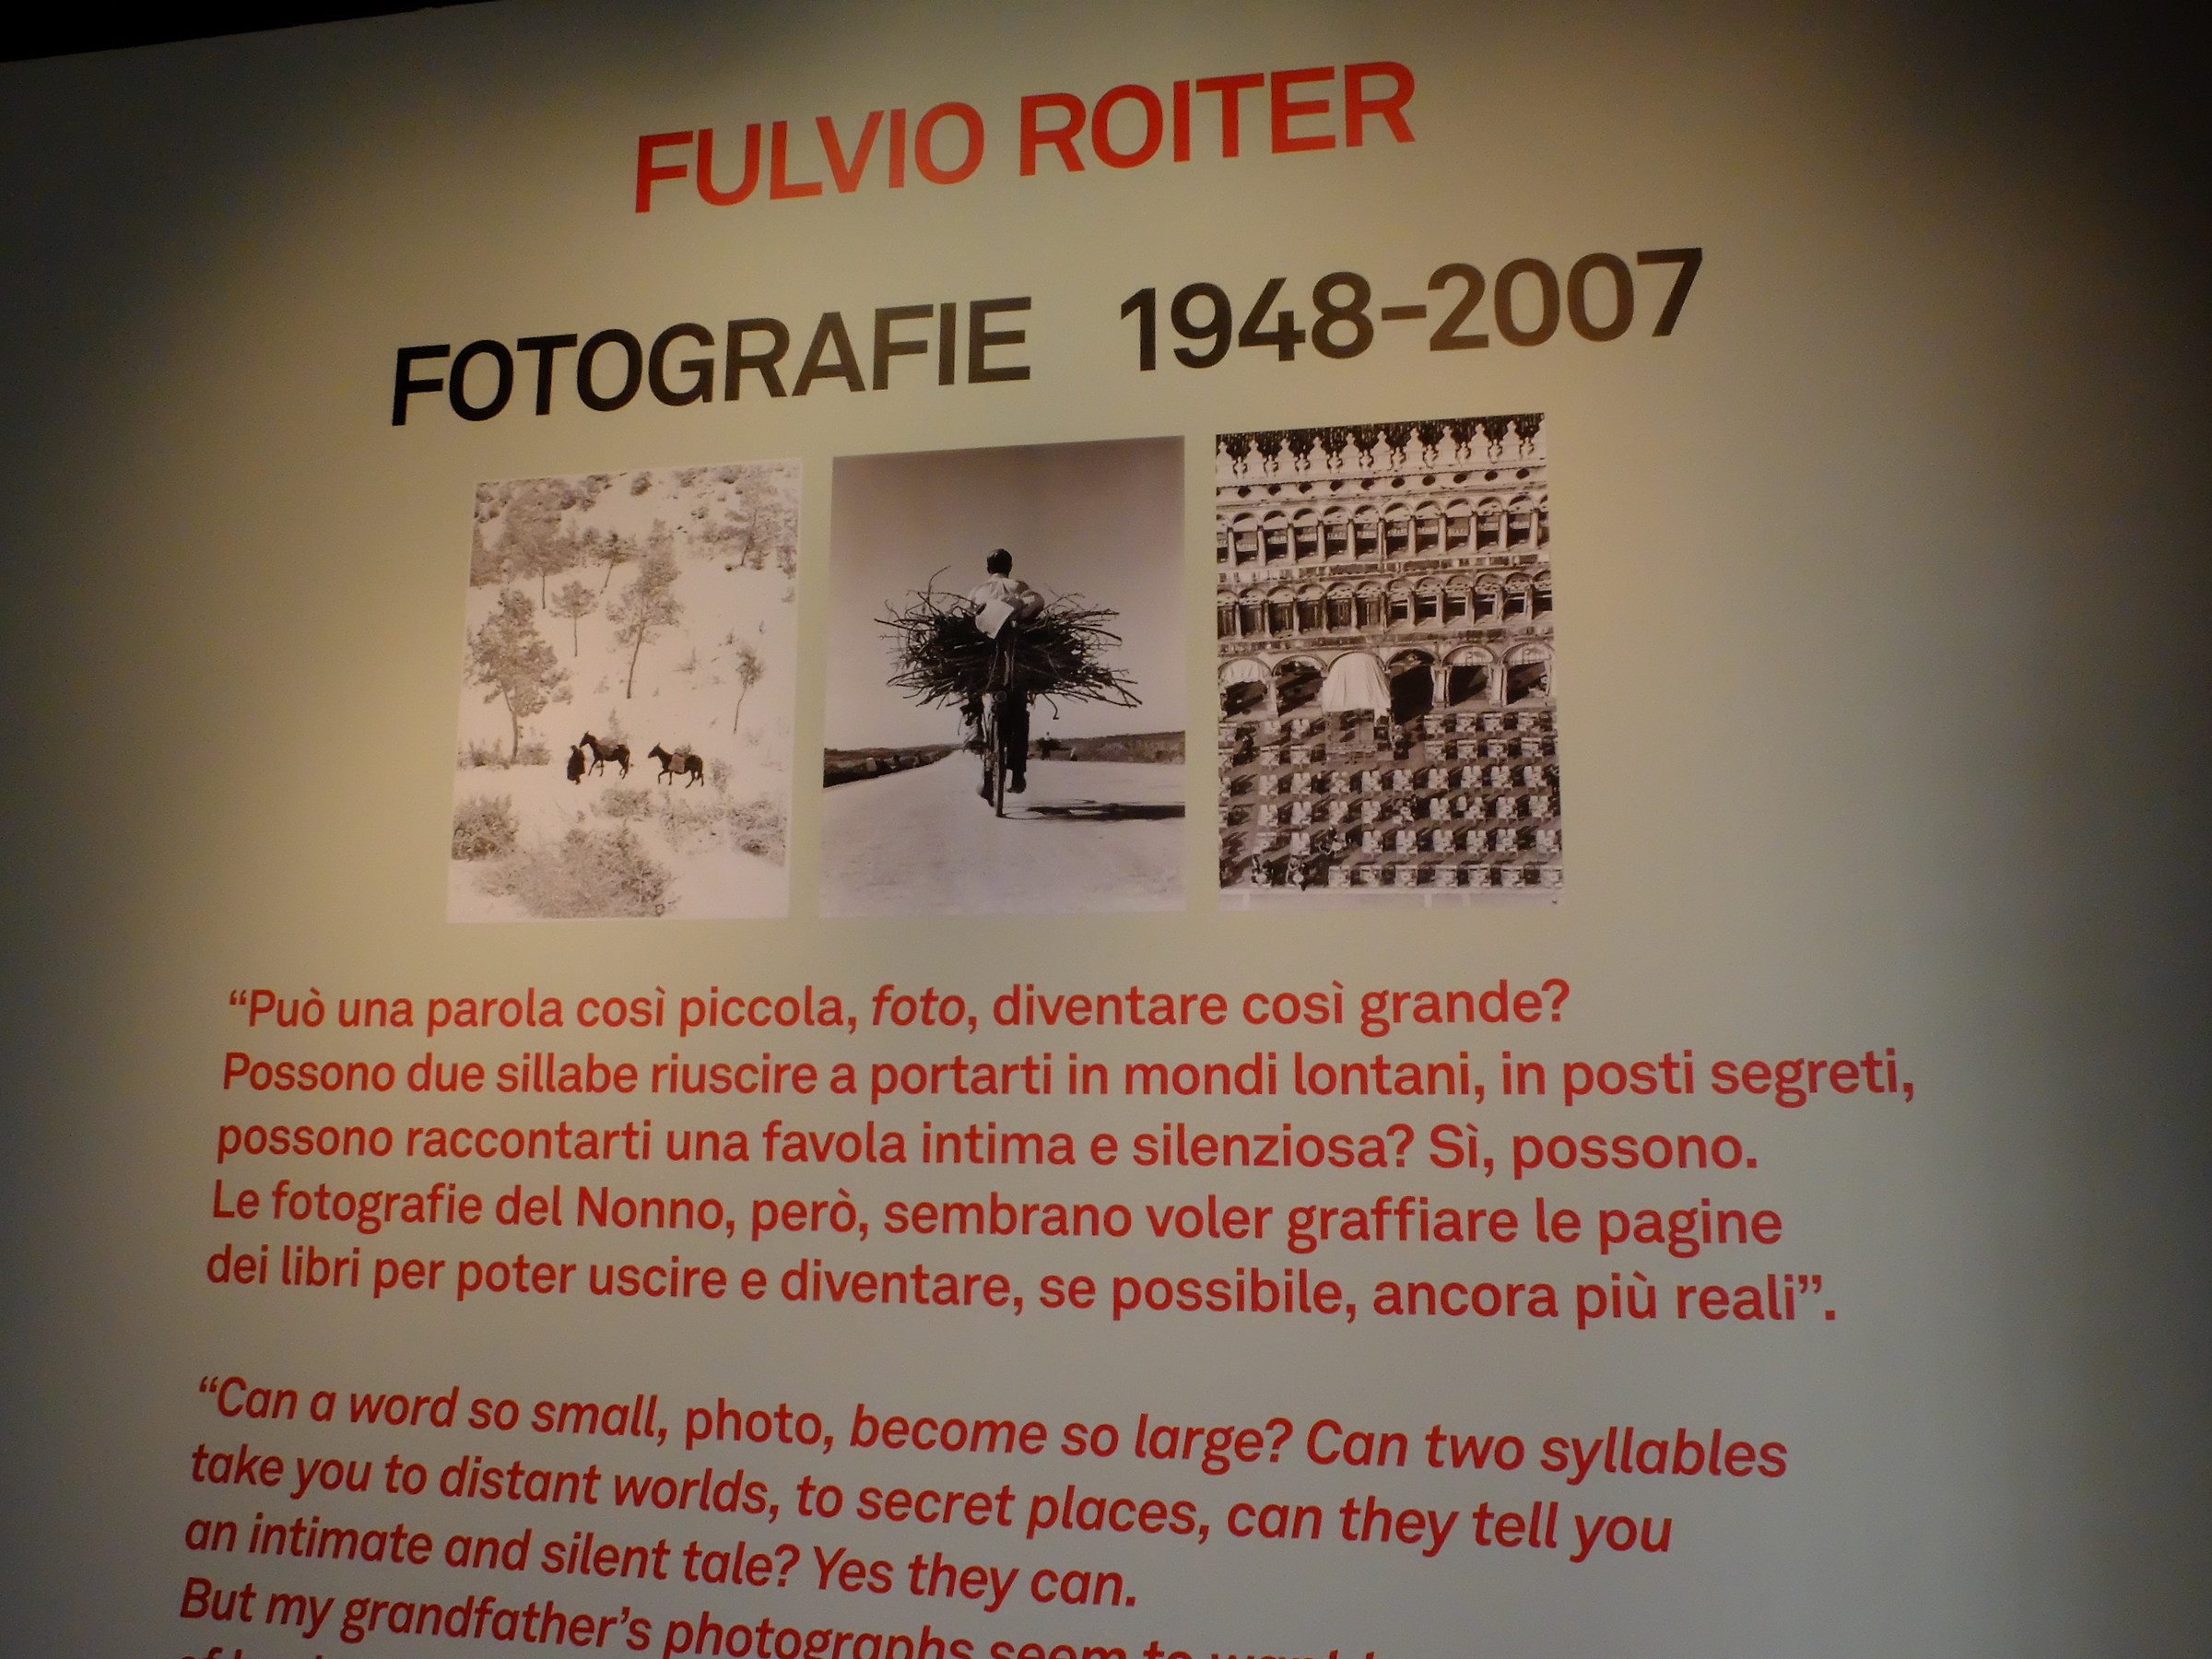 Exposure Roiter, museum three Oci ...